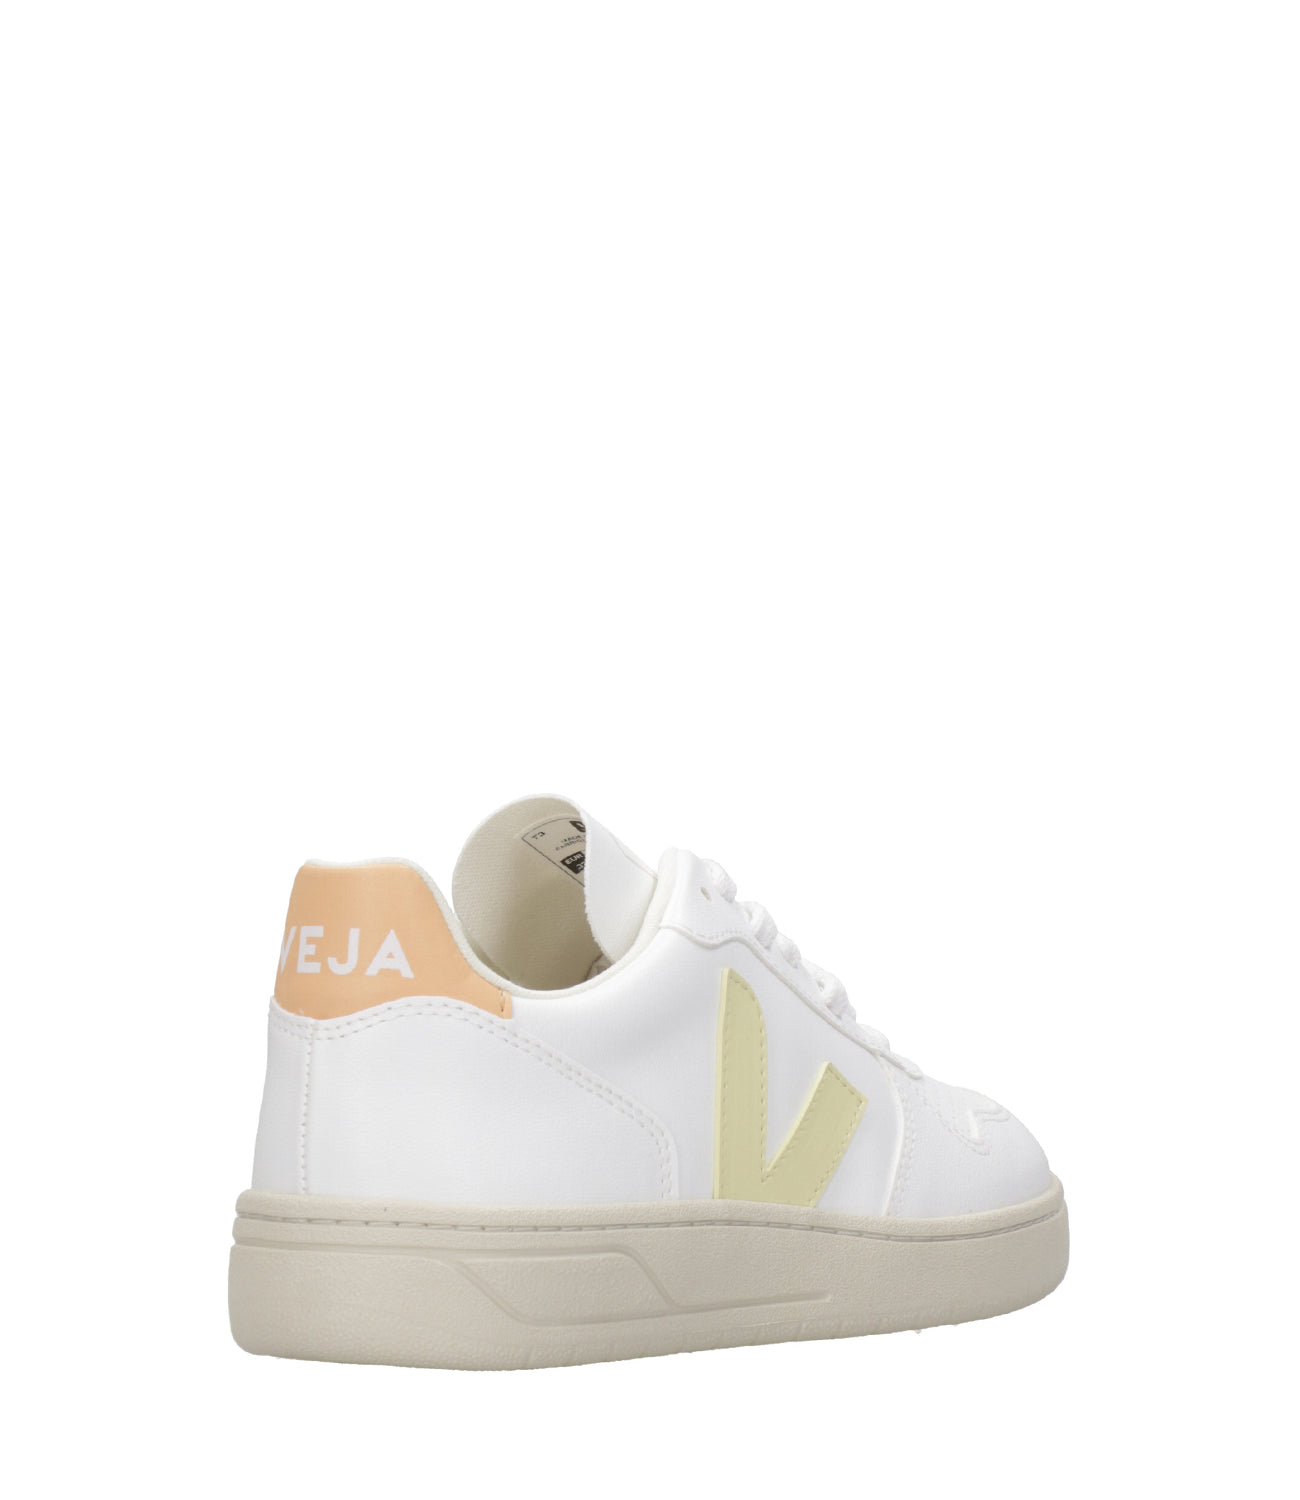 Veja | Sneakers V-10 White and Peach